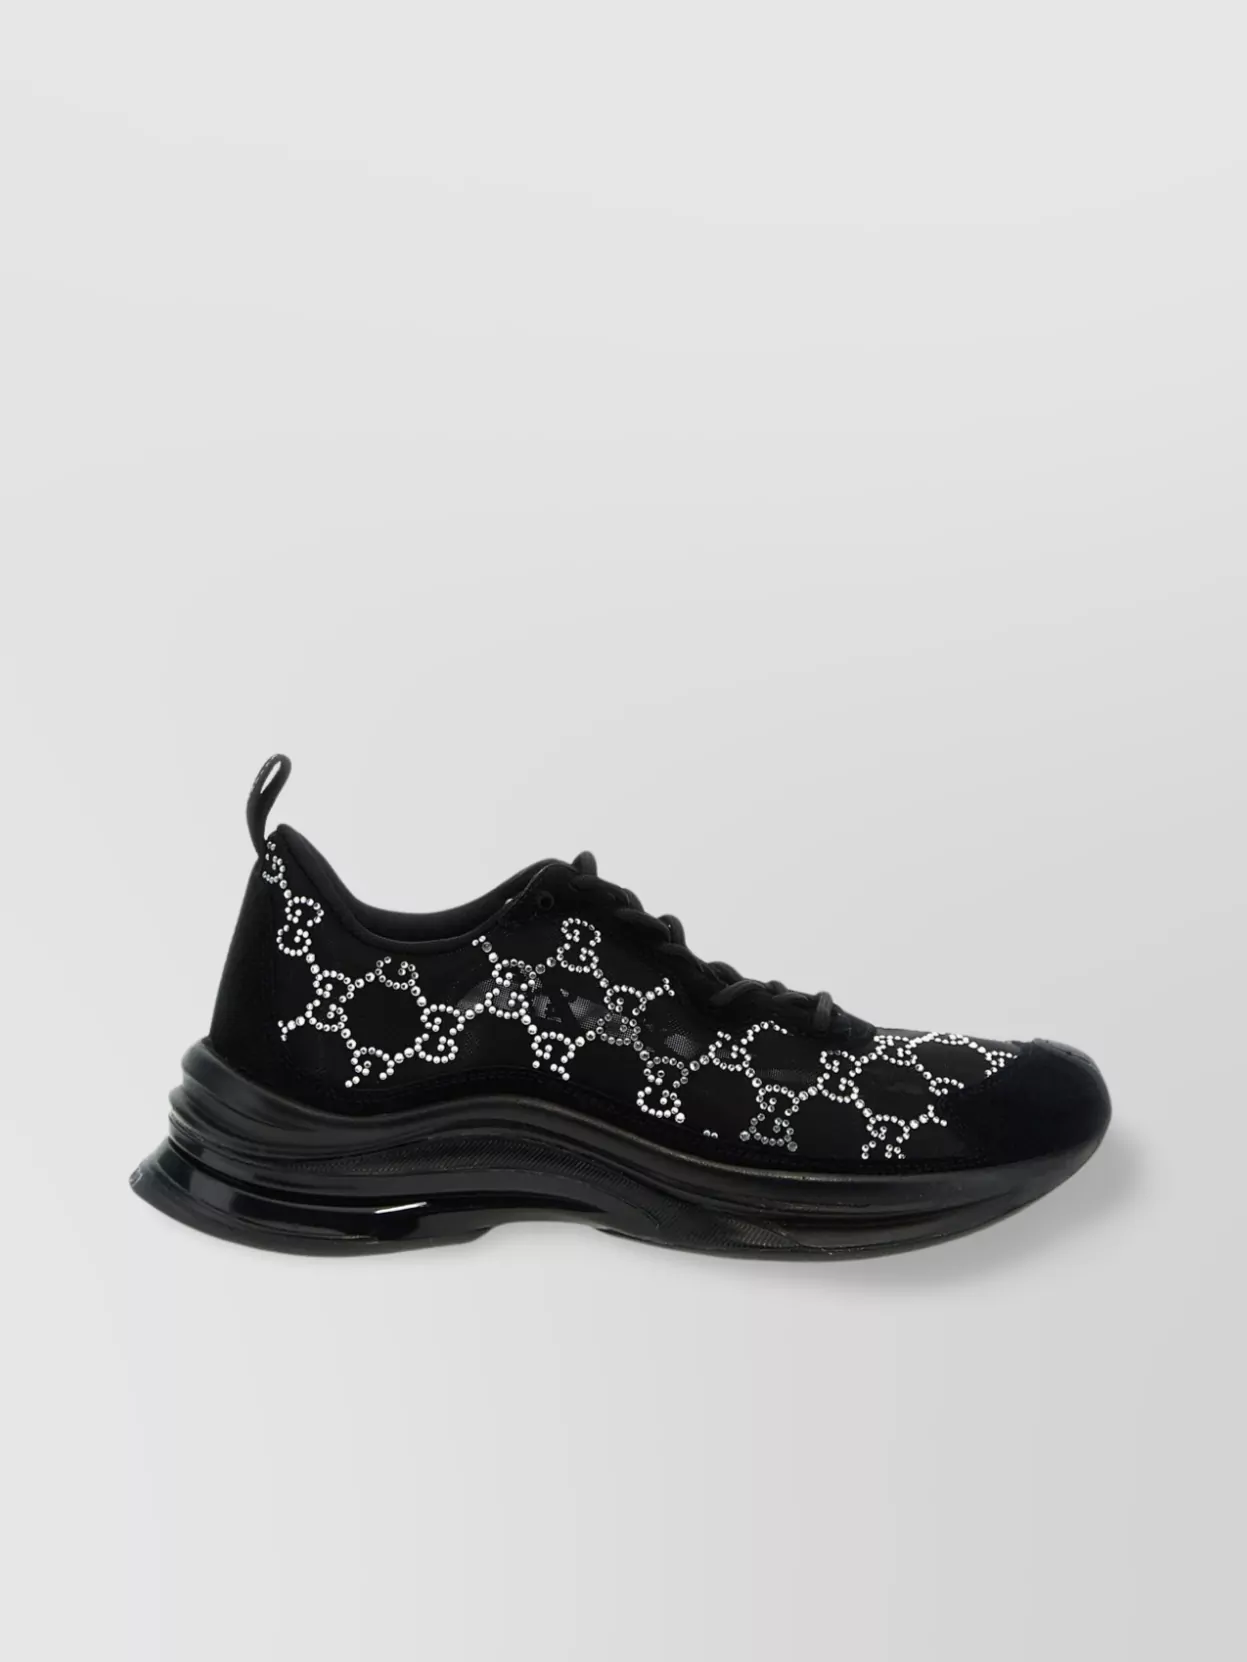 Gucci Embellished Low-top Sneakers Pull Tab Heel In Black